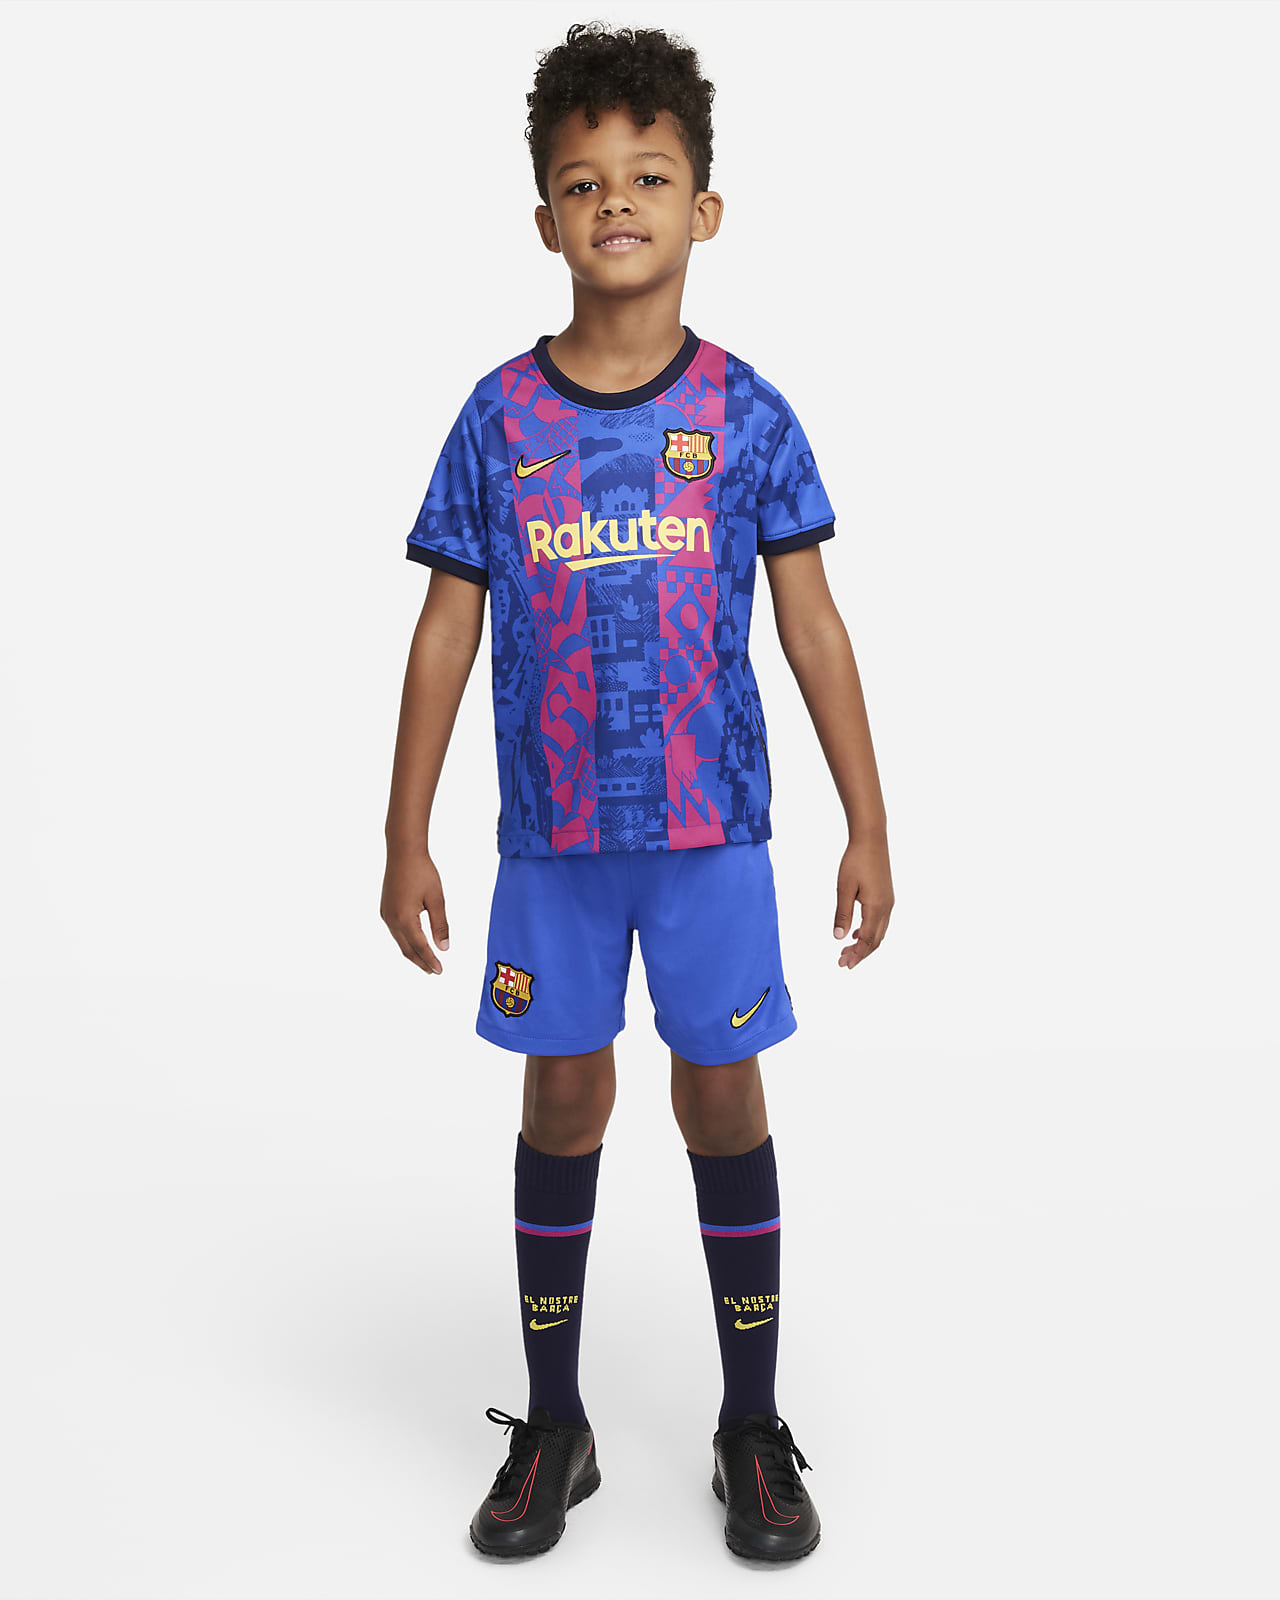 Εναλλακτική εμφάνιση ποδοσφαίρου Μπαρτσελόνα 2021/22 για μικρά παιδιά